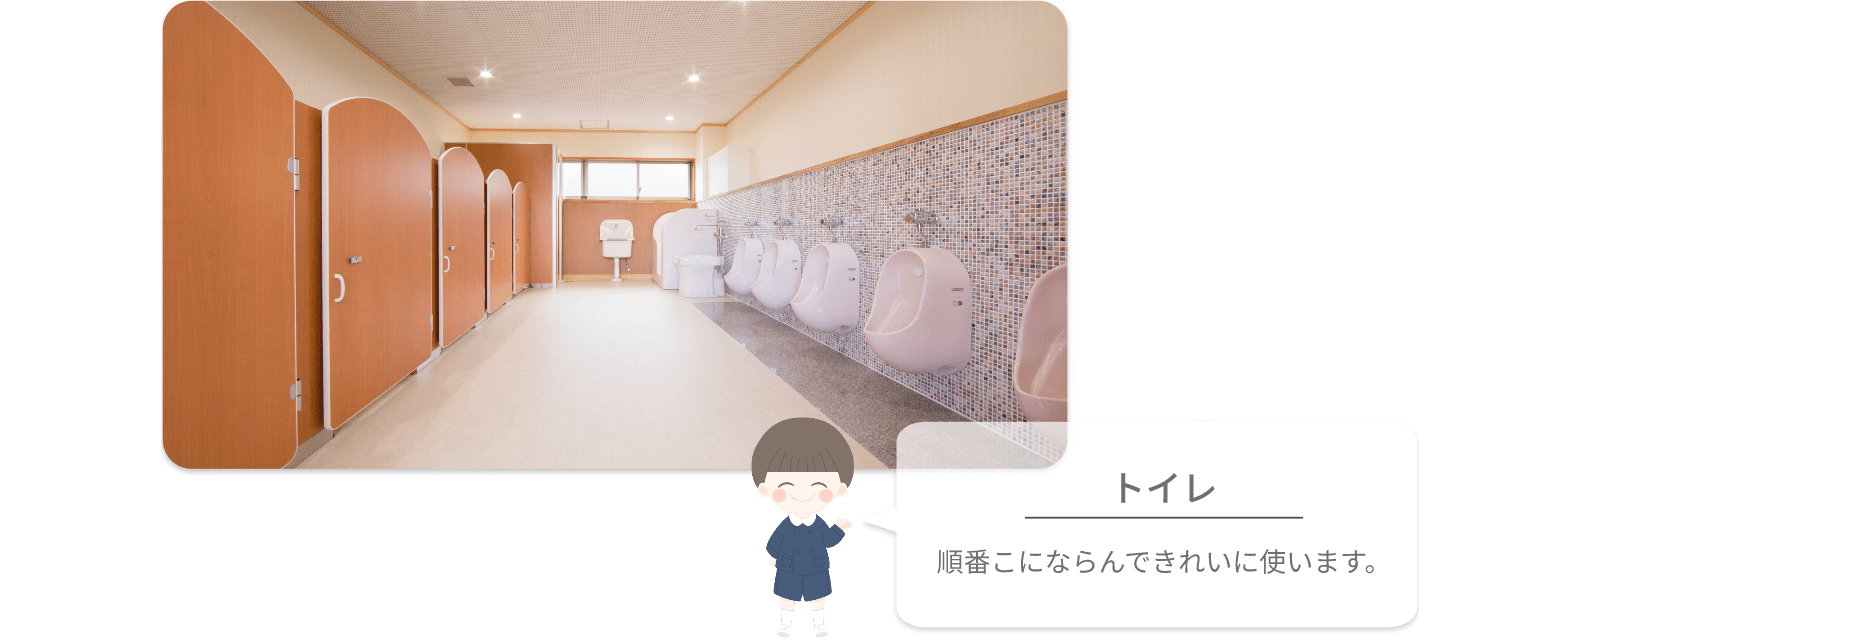 小倉幼稚園 トイレ